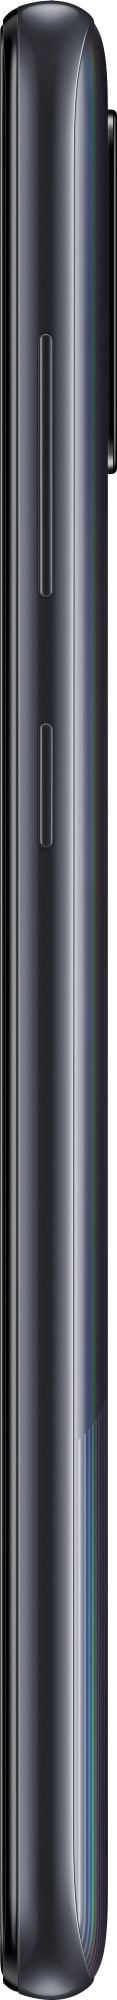 Samsung Galaxy A31 64GB Black